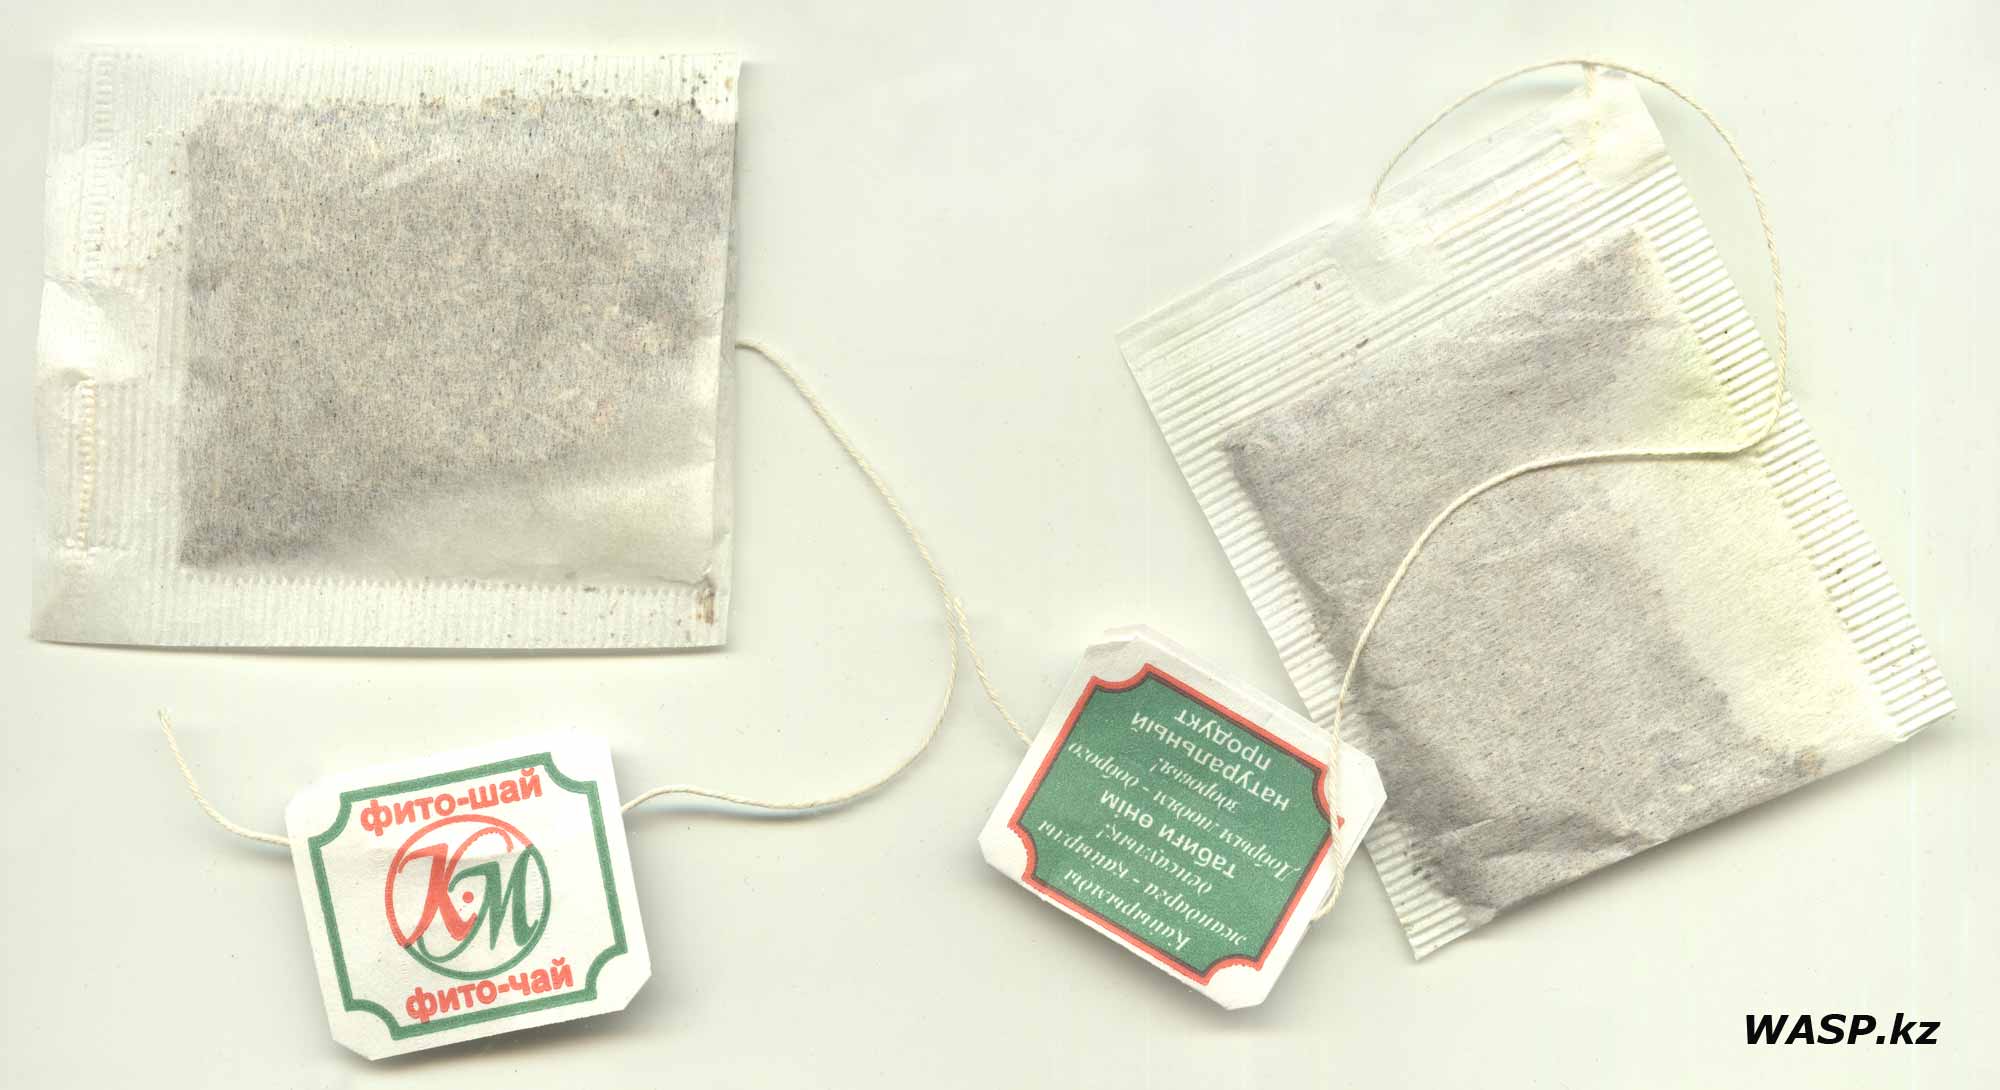 Отзыв на Фито-чай Кызылмай и полное описание этих пакетиков